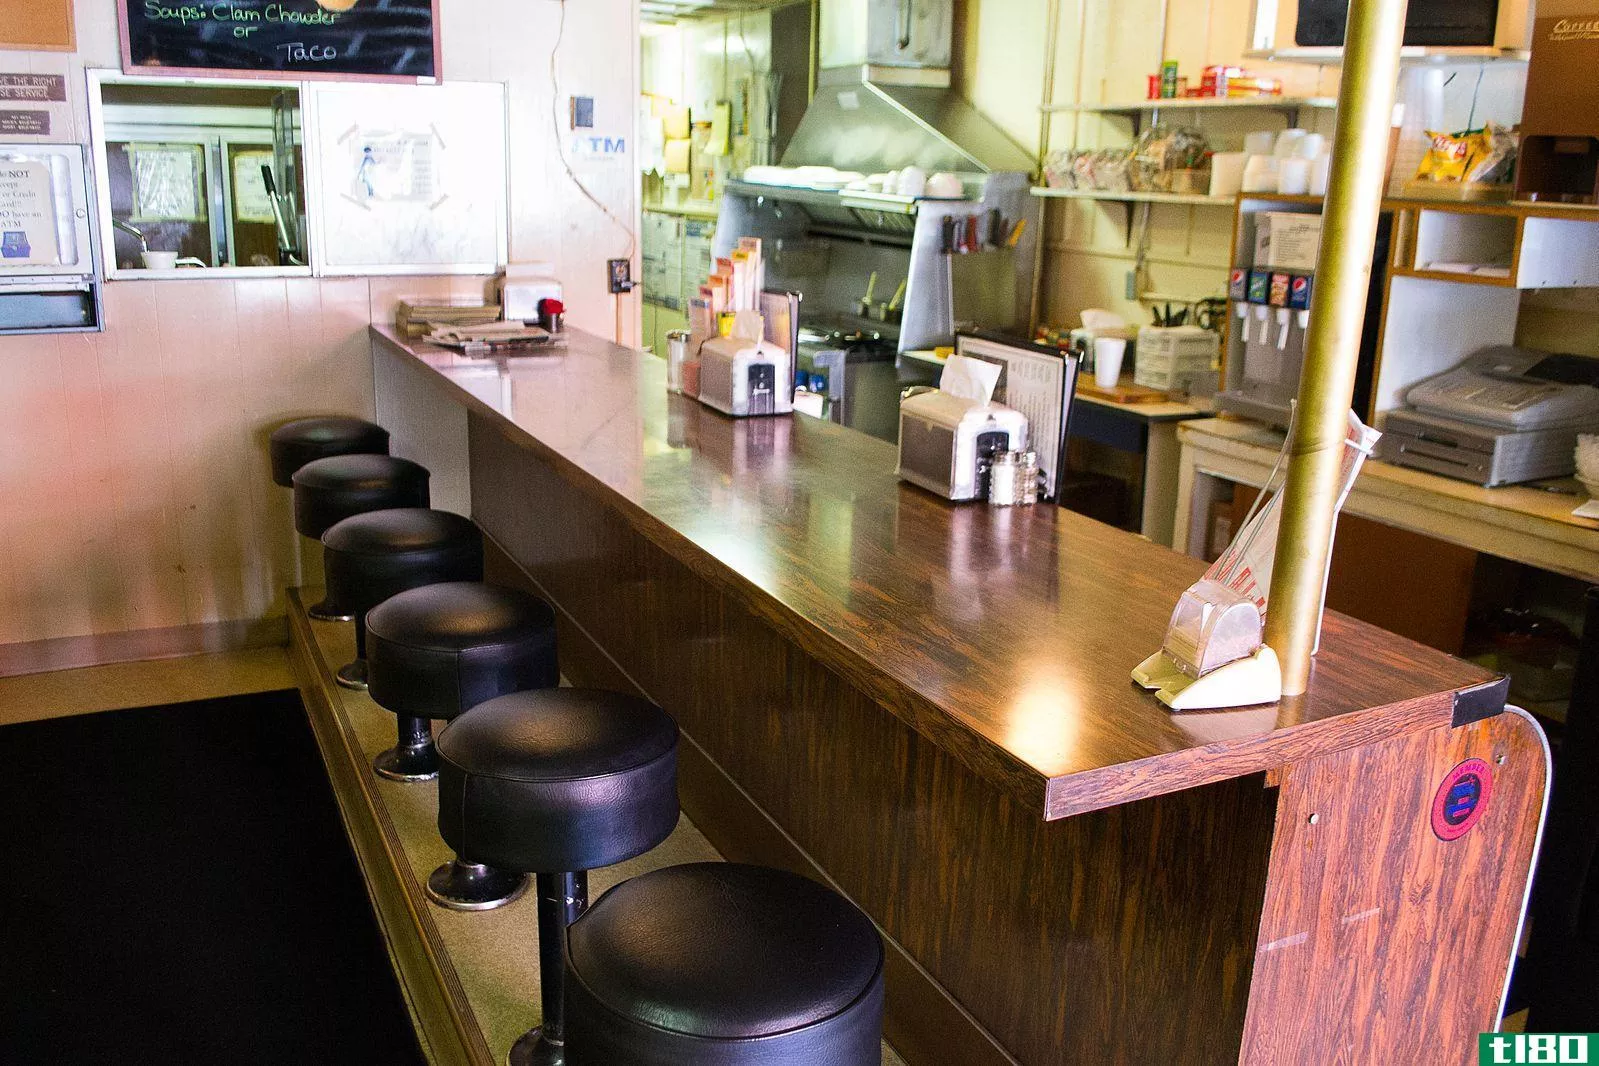 柜台(counter)和酒吧凳子(bar stools)的区别